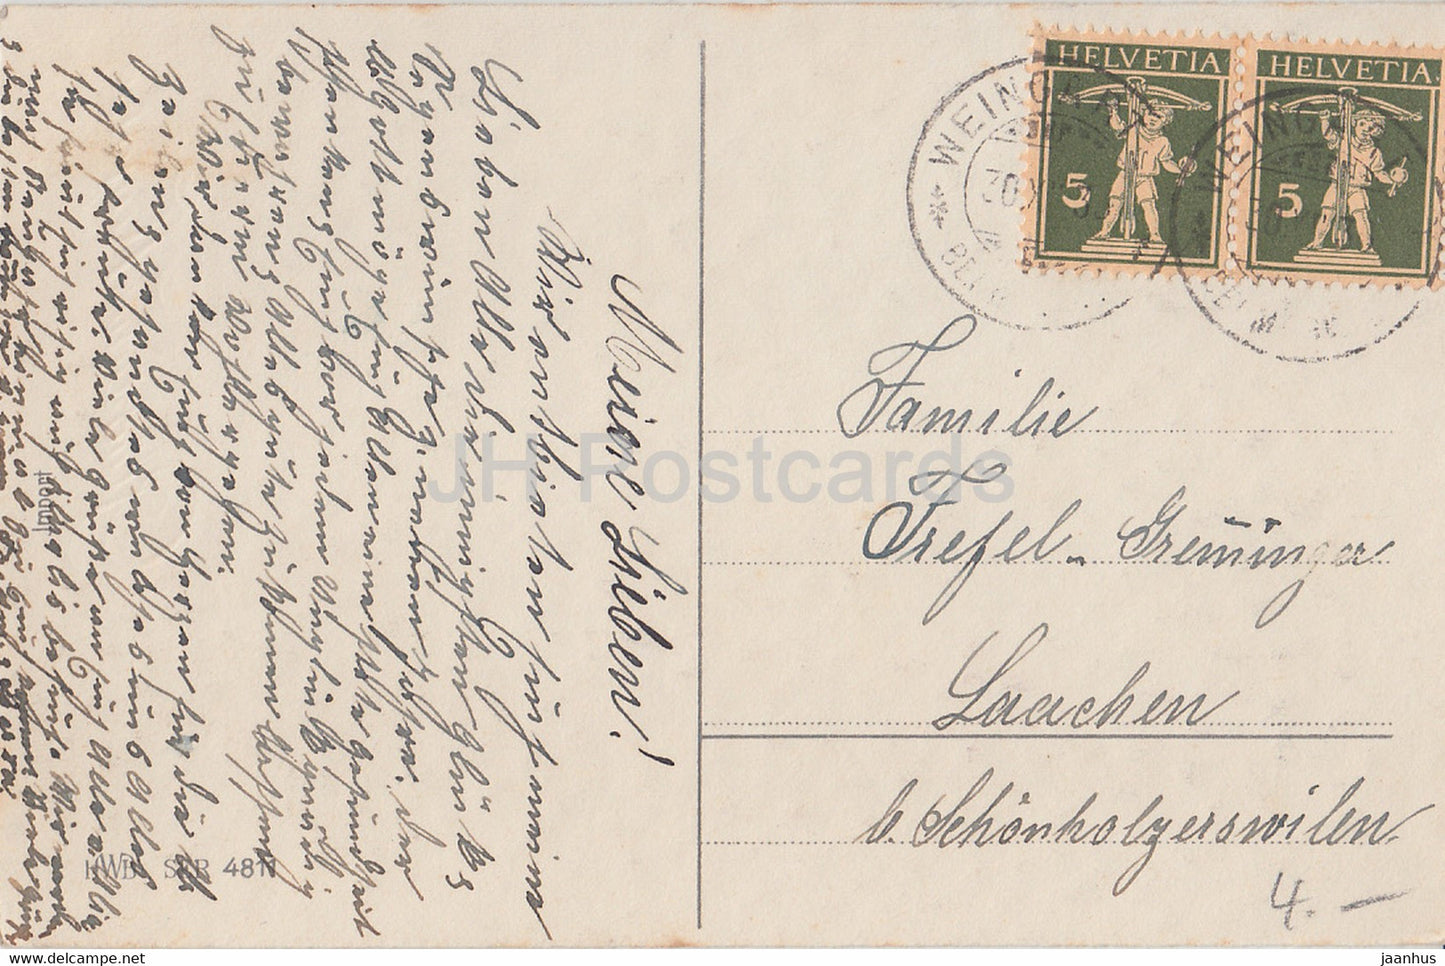 Carte de vœux du Nouvel An - Gluckliches Neujahr - maison - cloches - HWB SER 4811 carte postale ancienne - années 1930 - Allemagne - utilisé